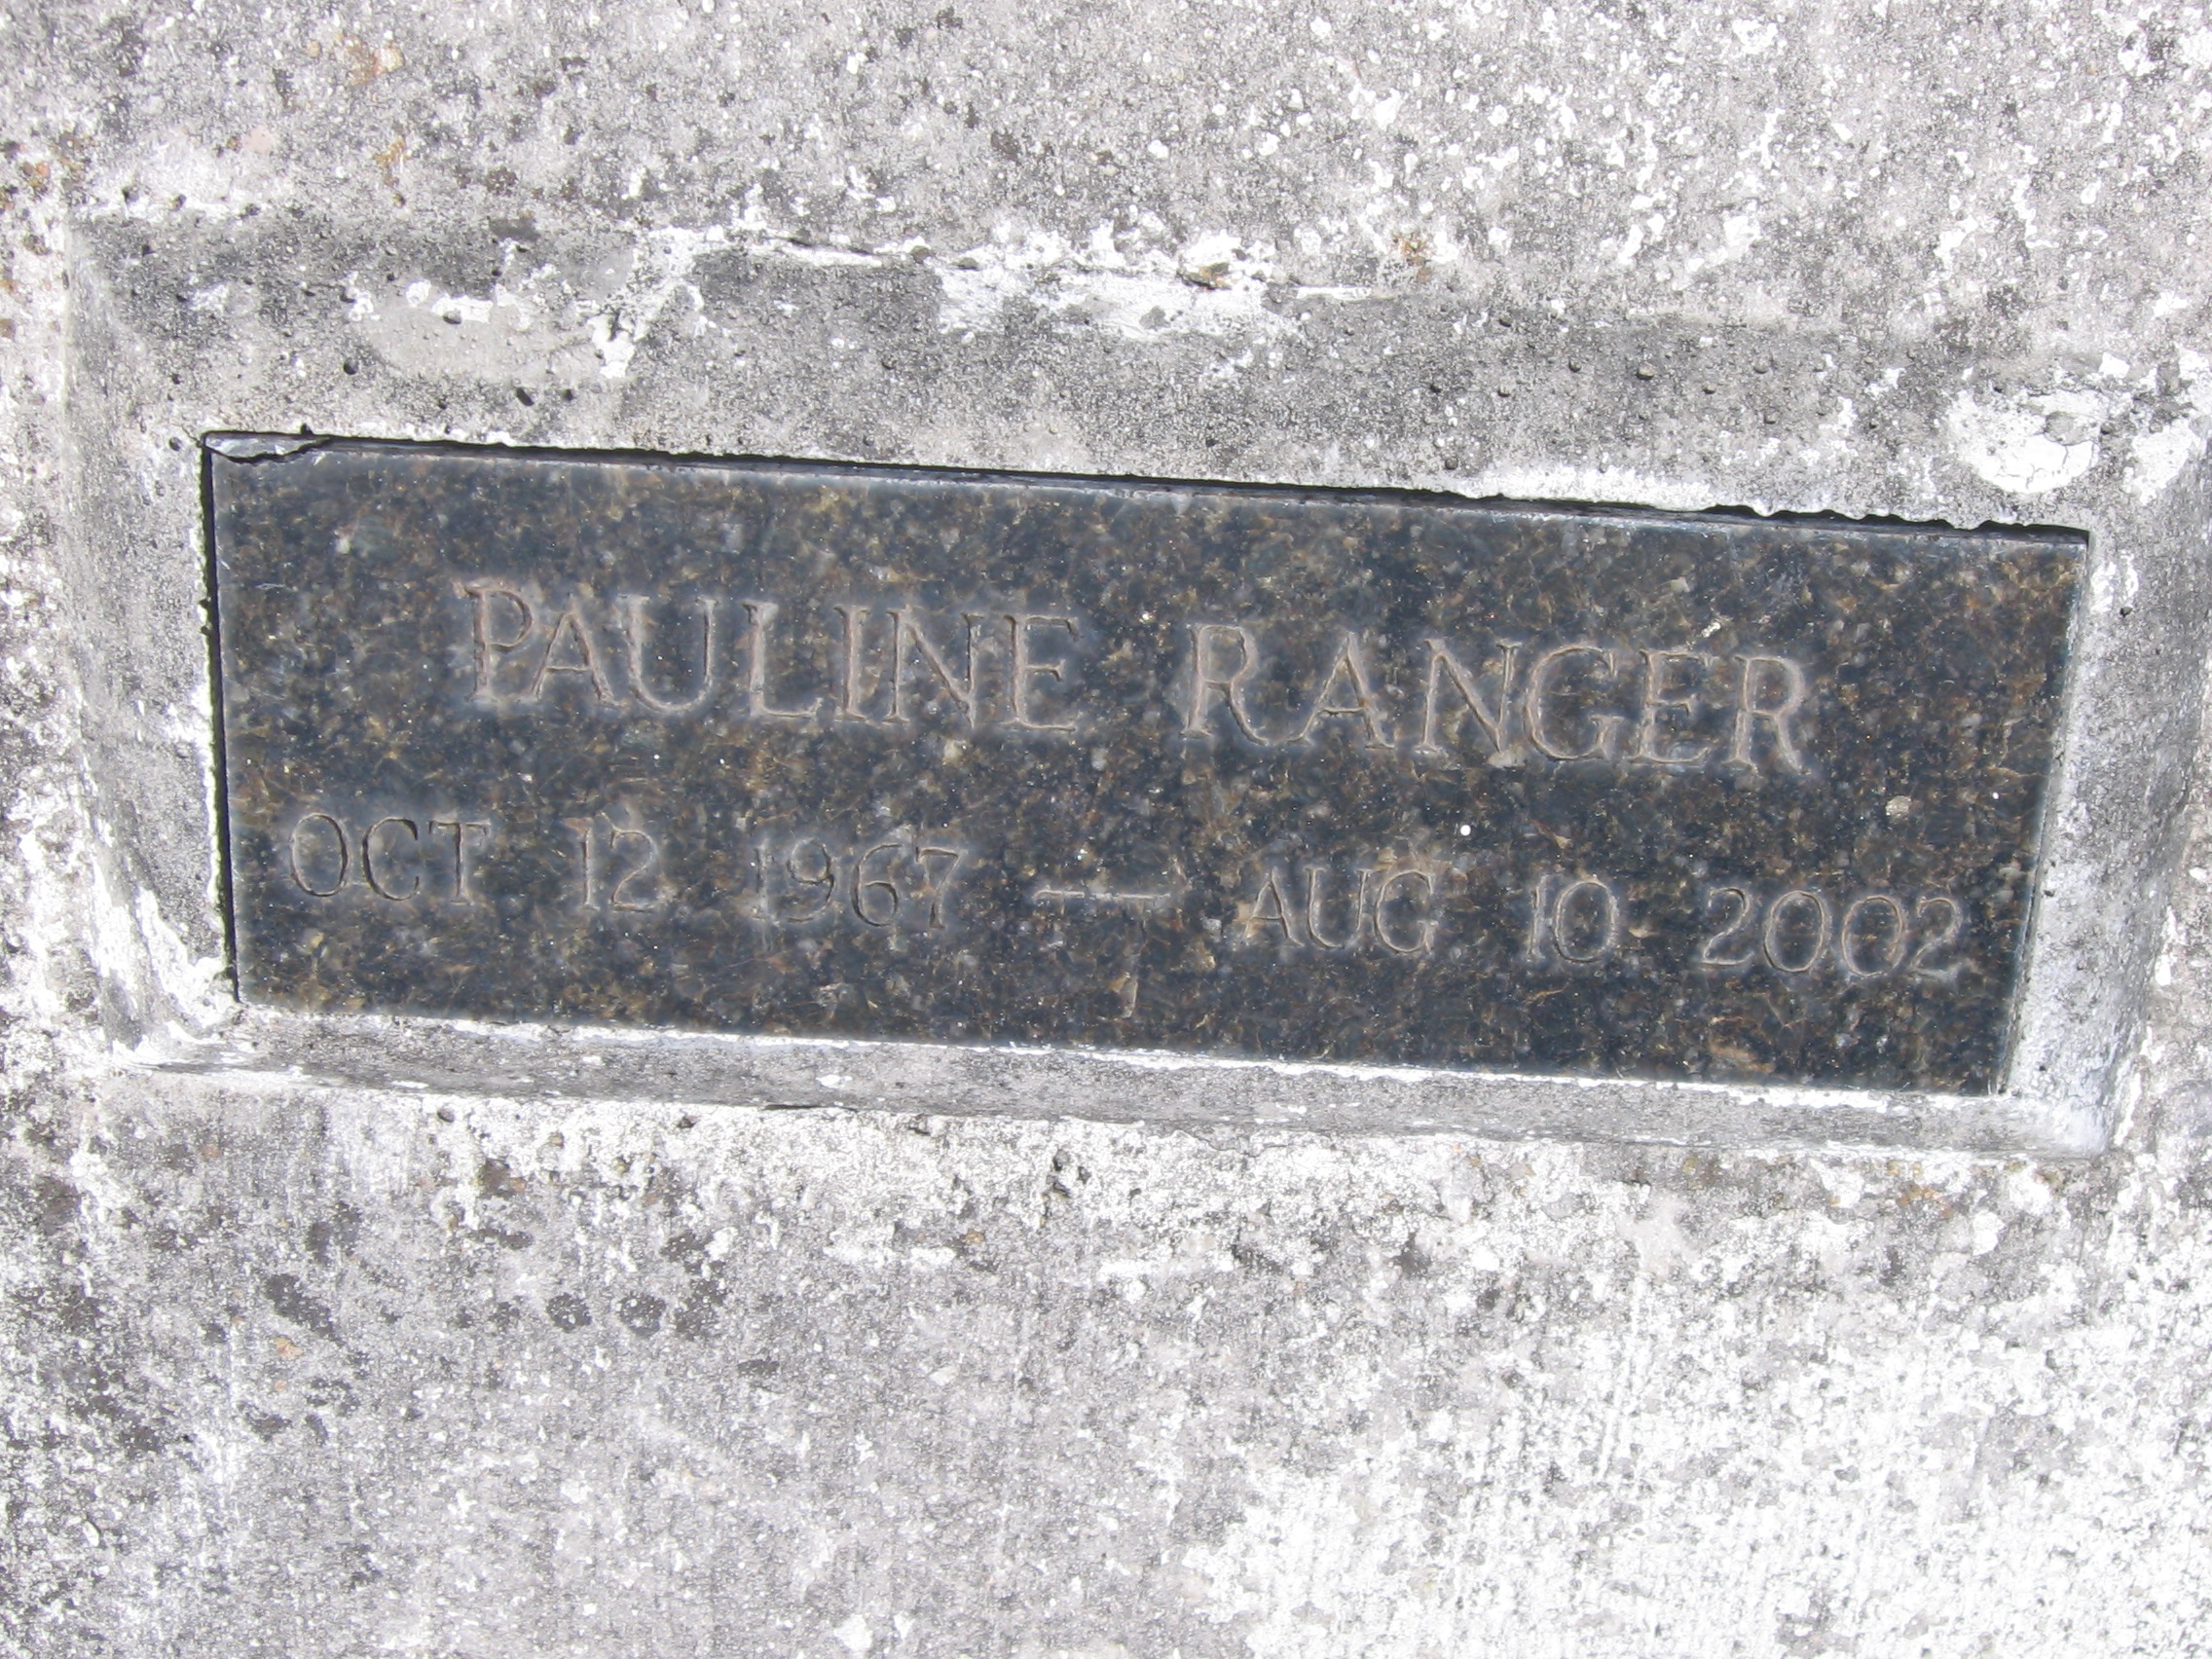 Pauline Ranger